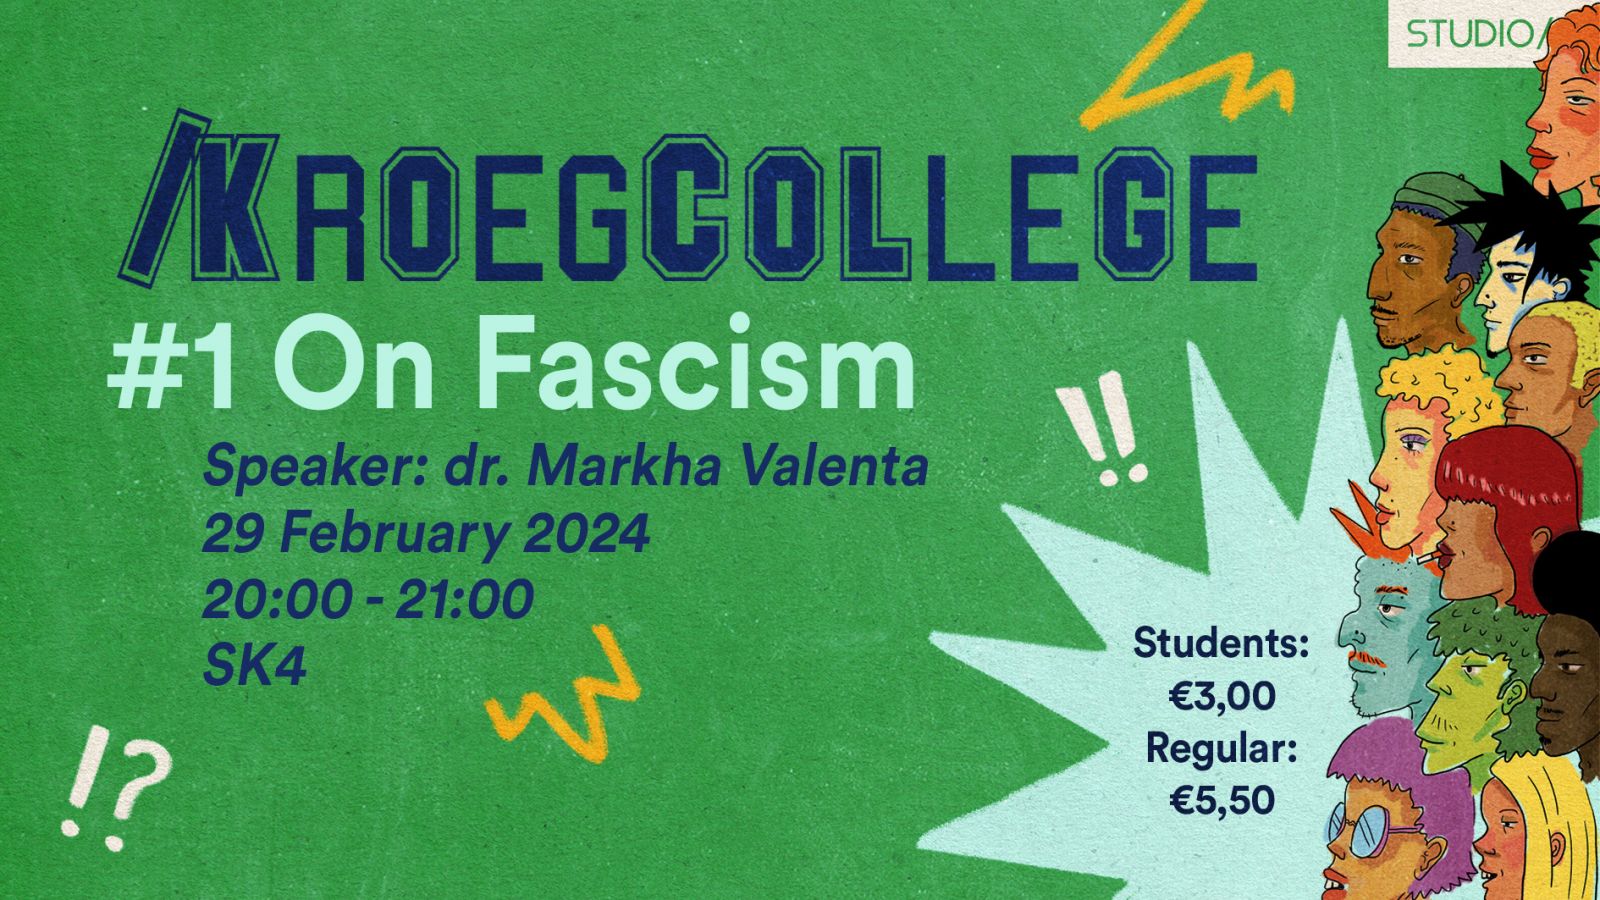 /Kroegcollege: On Fascism